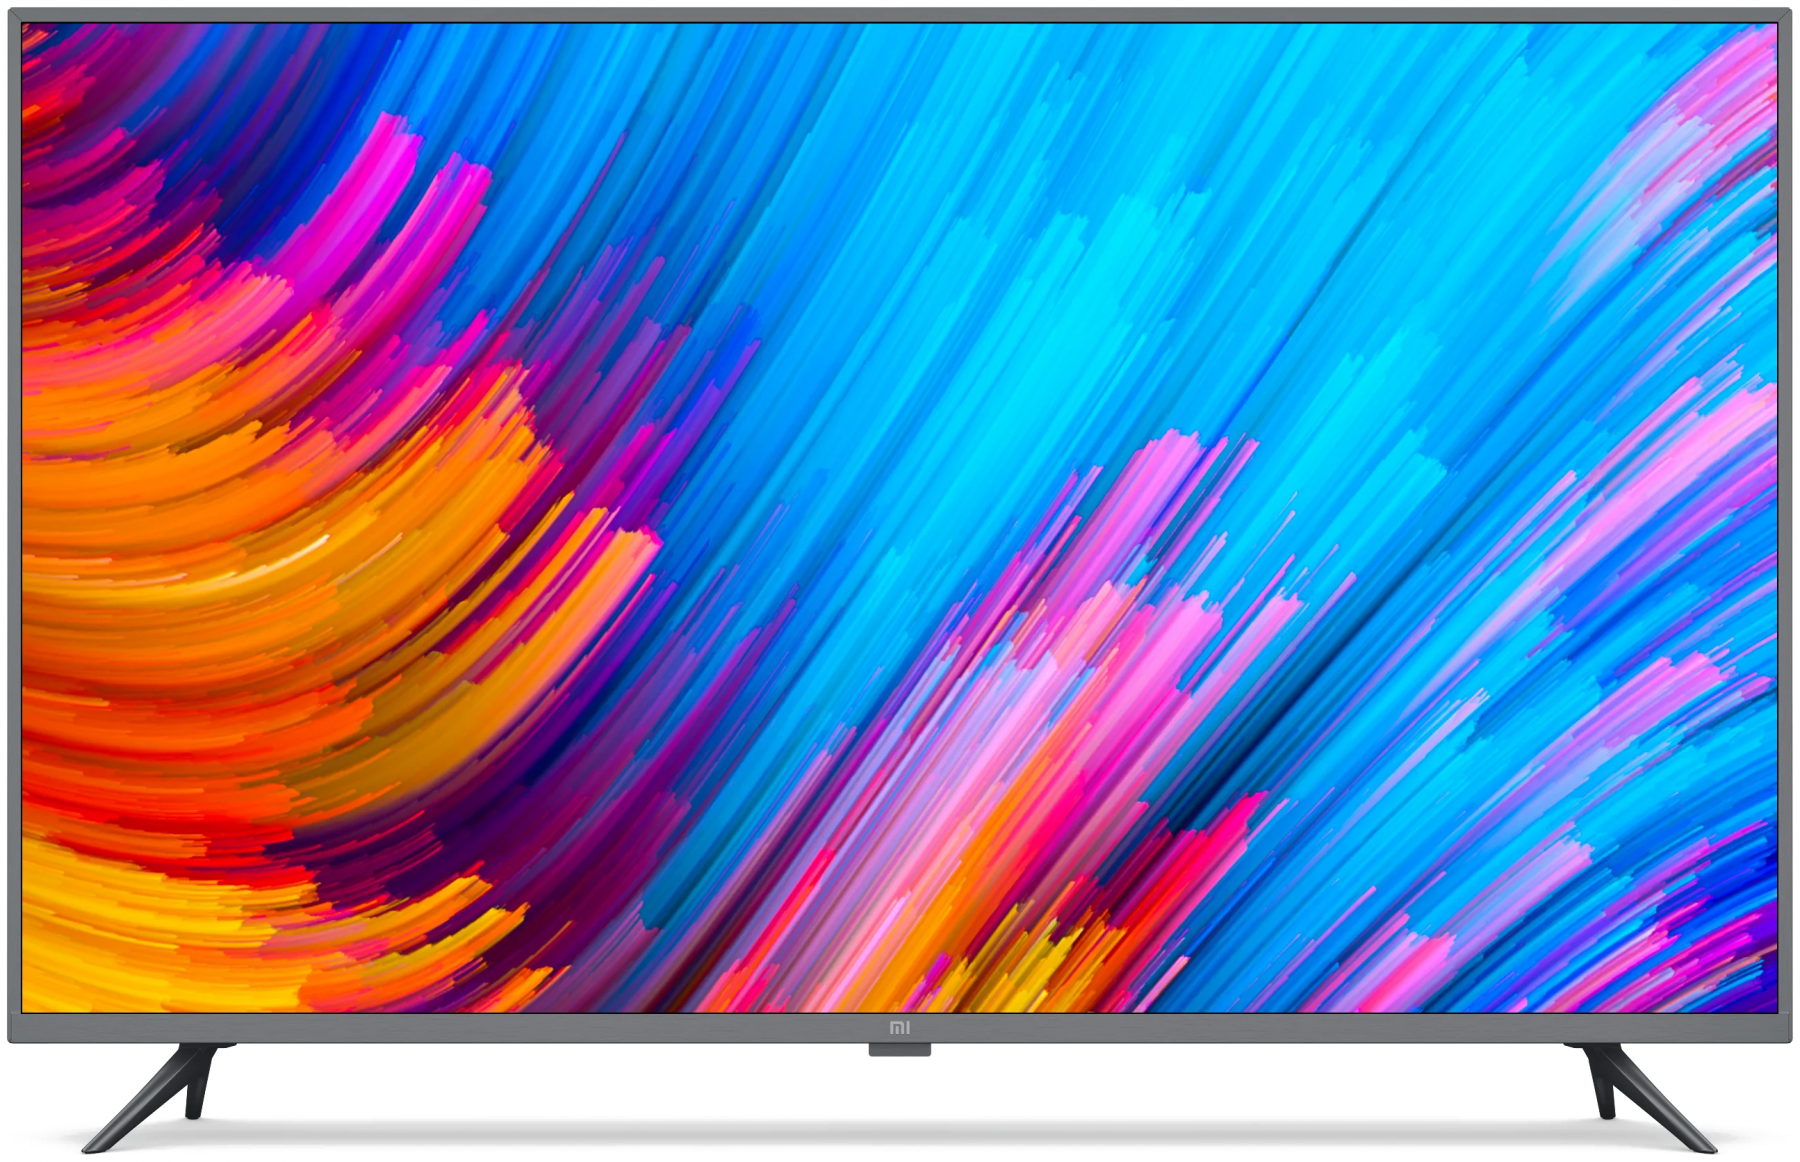 50" Телевизор Xiaomi Mi TV 4S 50 2020 LED, стальной